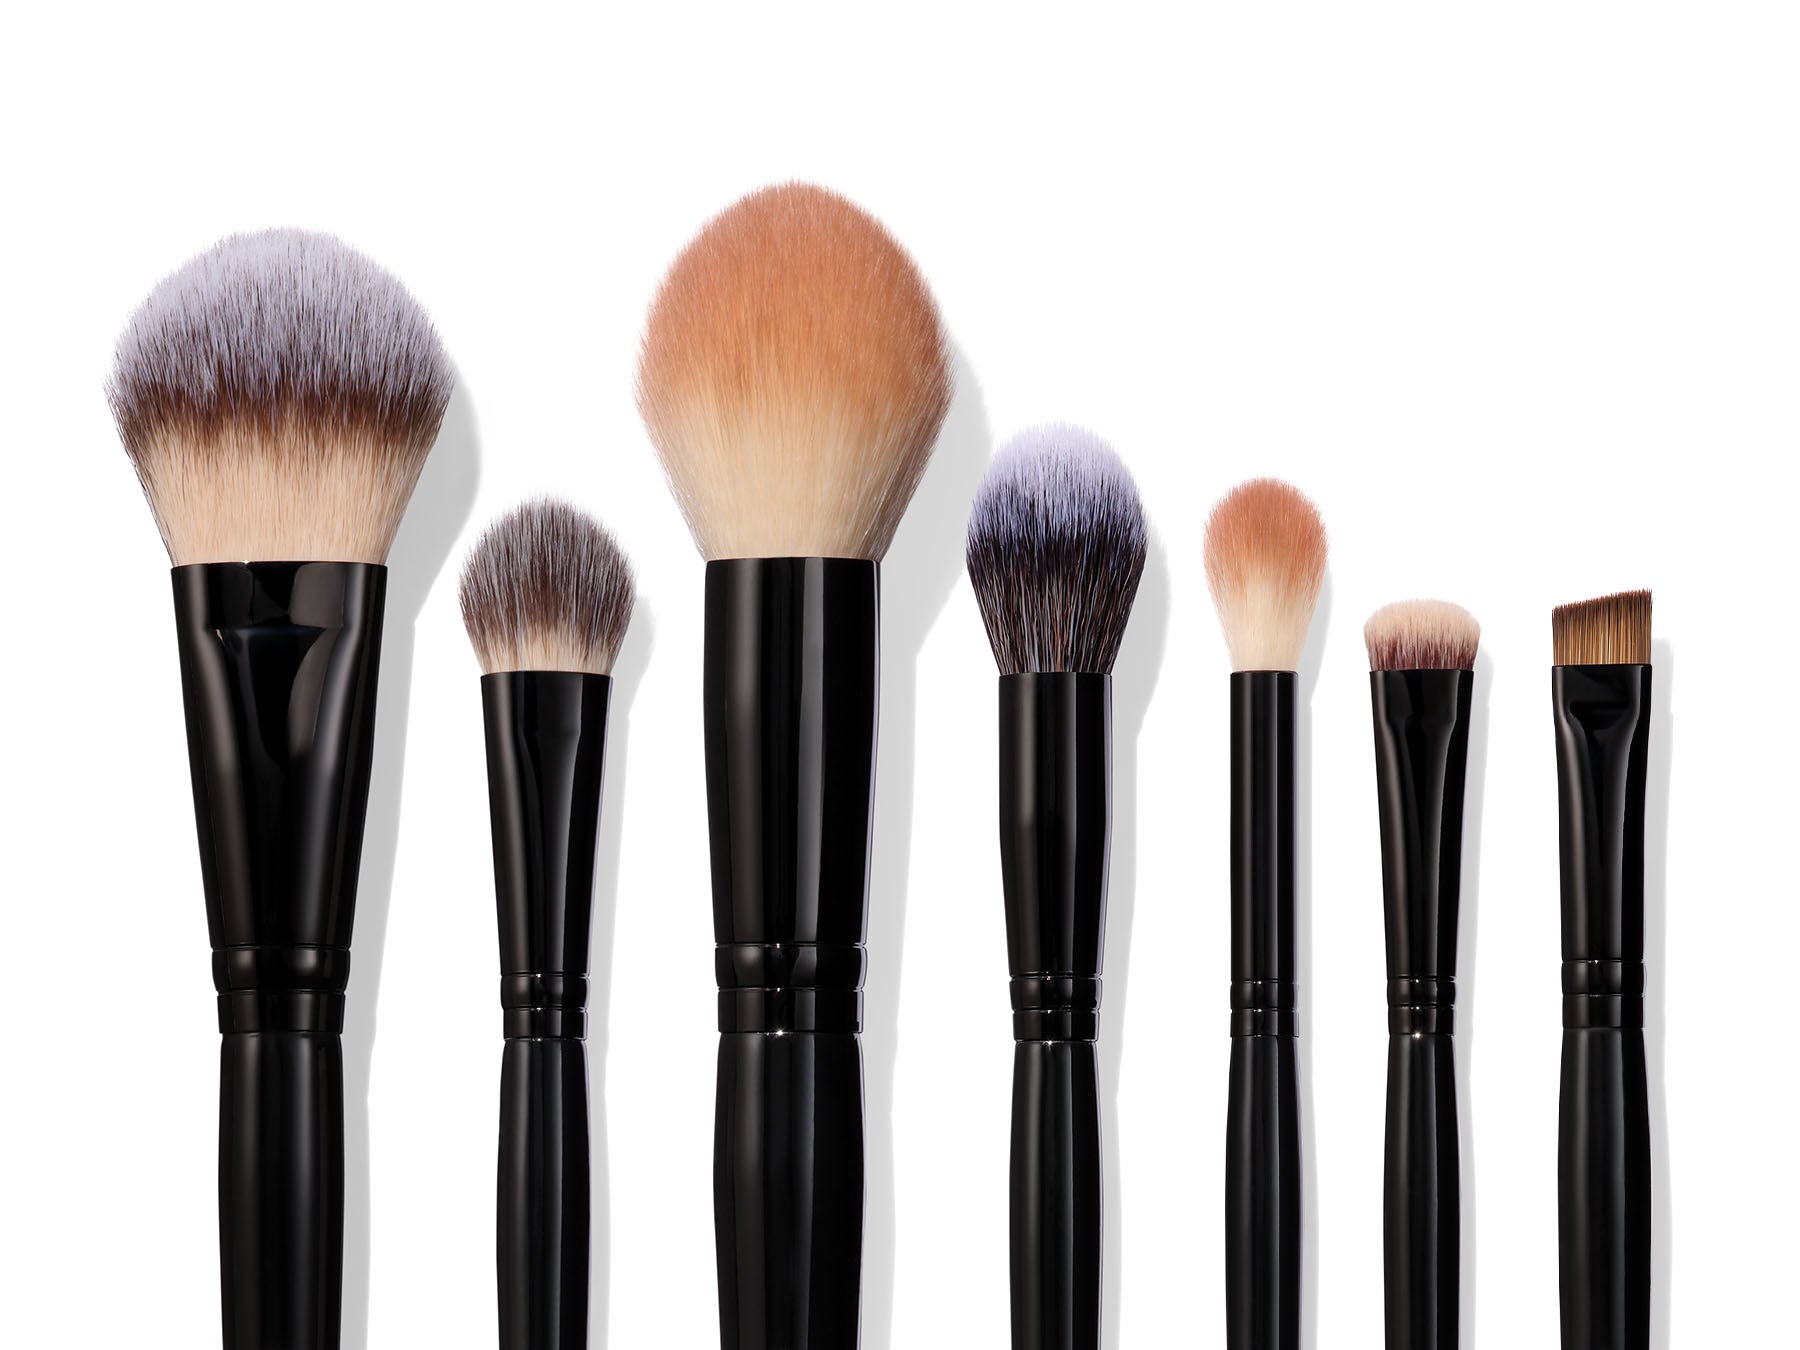 Makeup Brush Sets